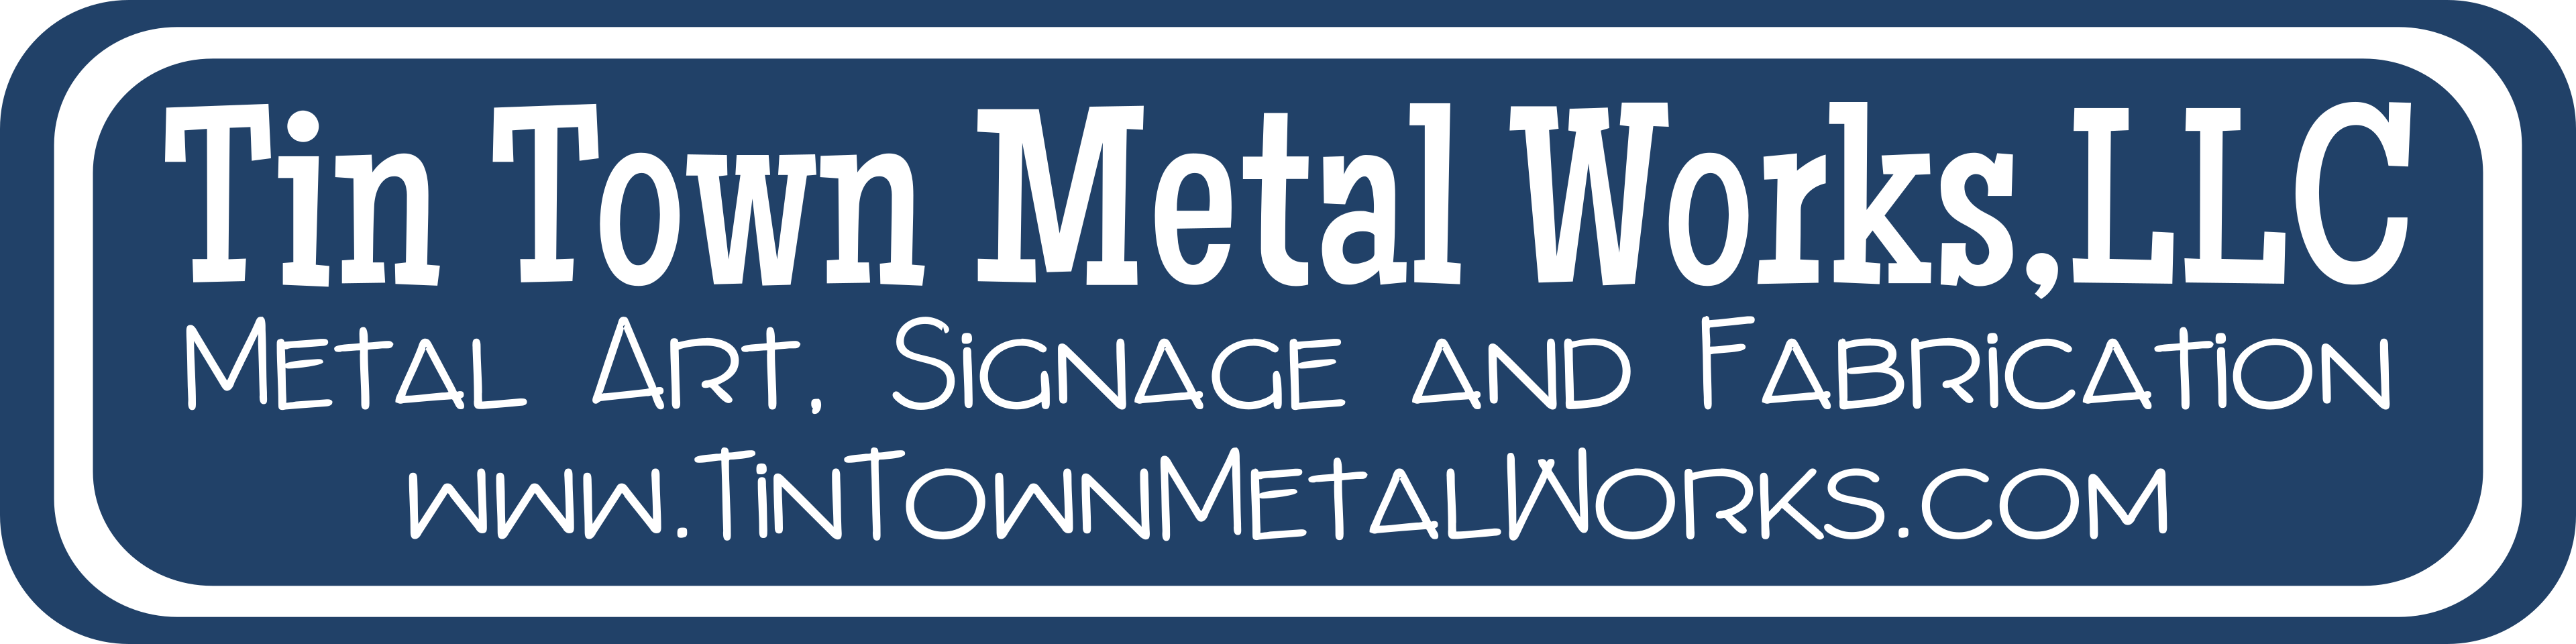 Tin Town Metal Works, LLC